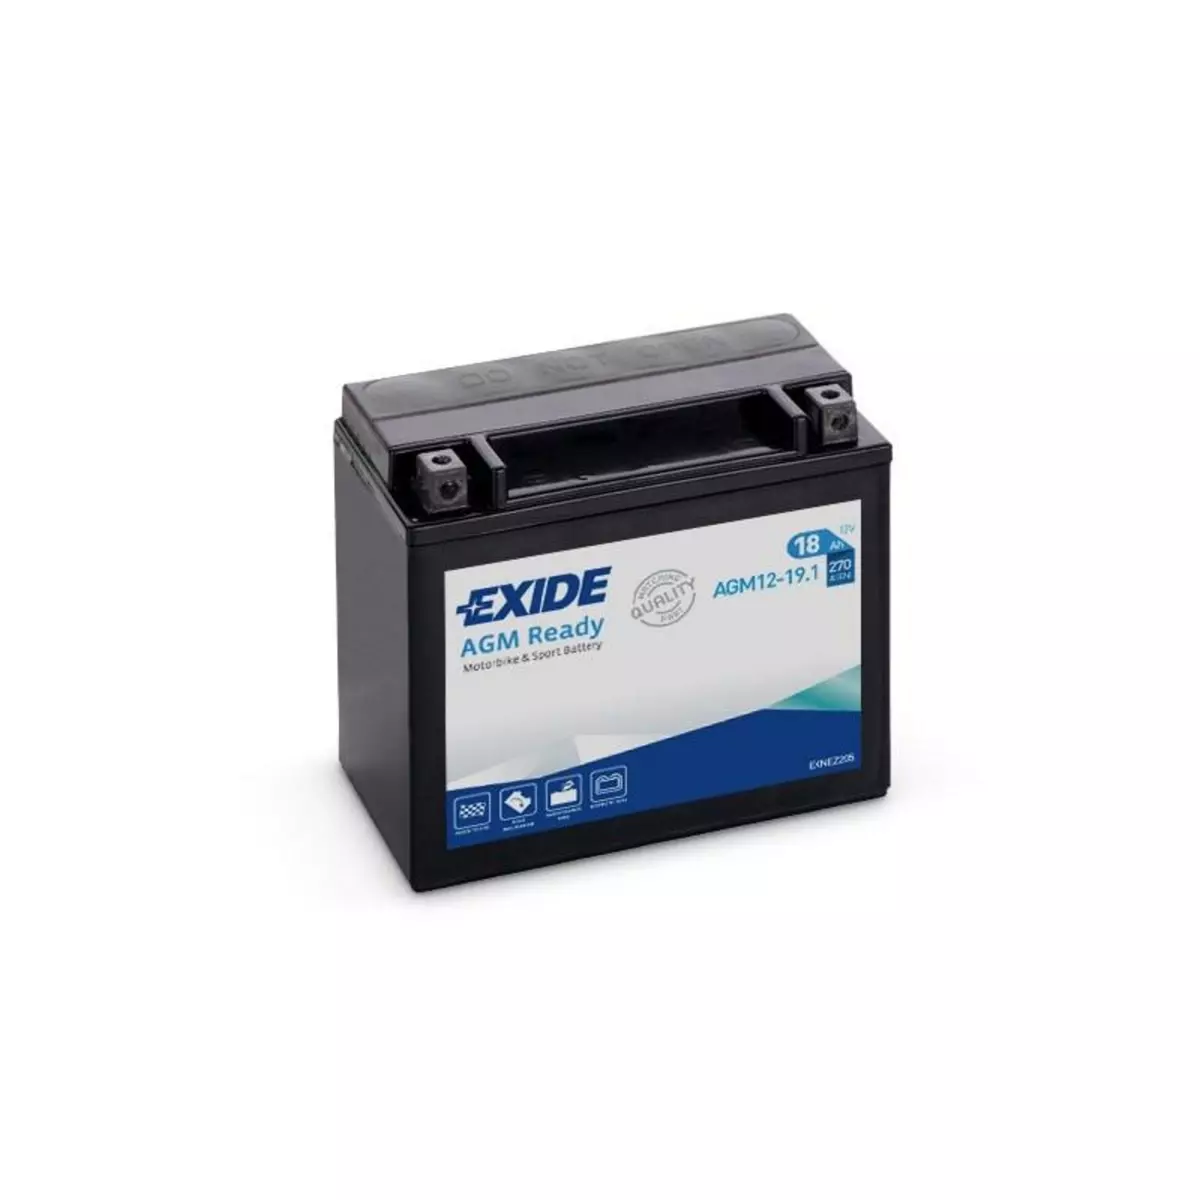 EXIDE Batterie moto Exide AGM12-19.1 YTX20H-BS 12v 18ah 270A